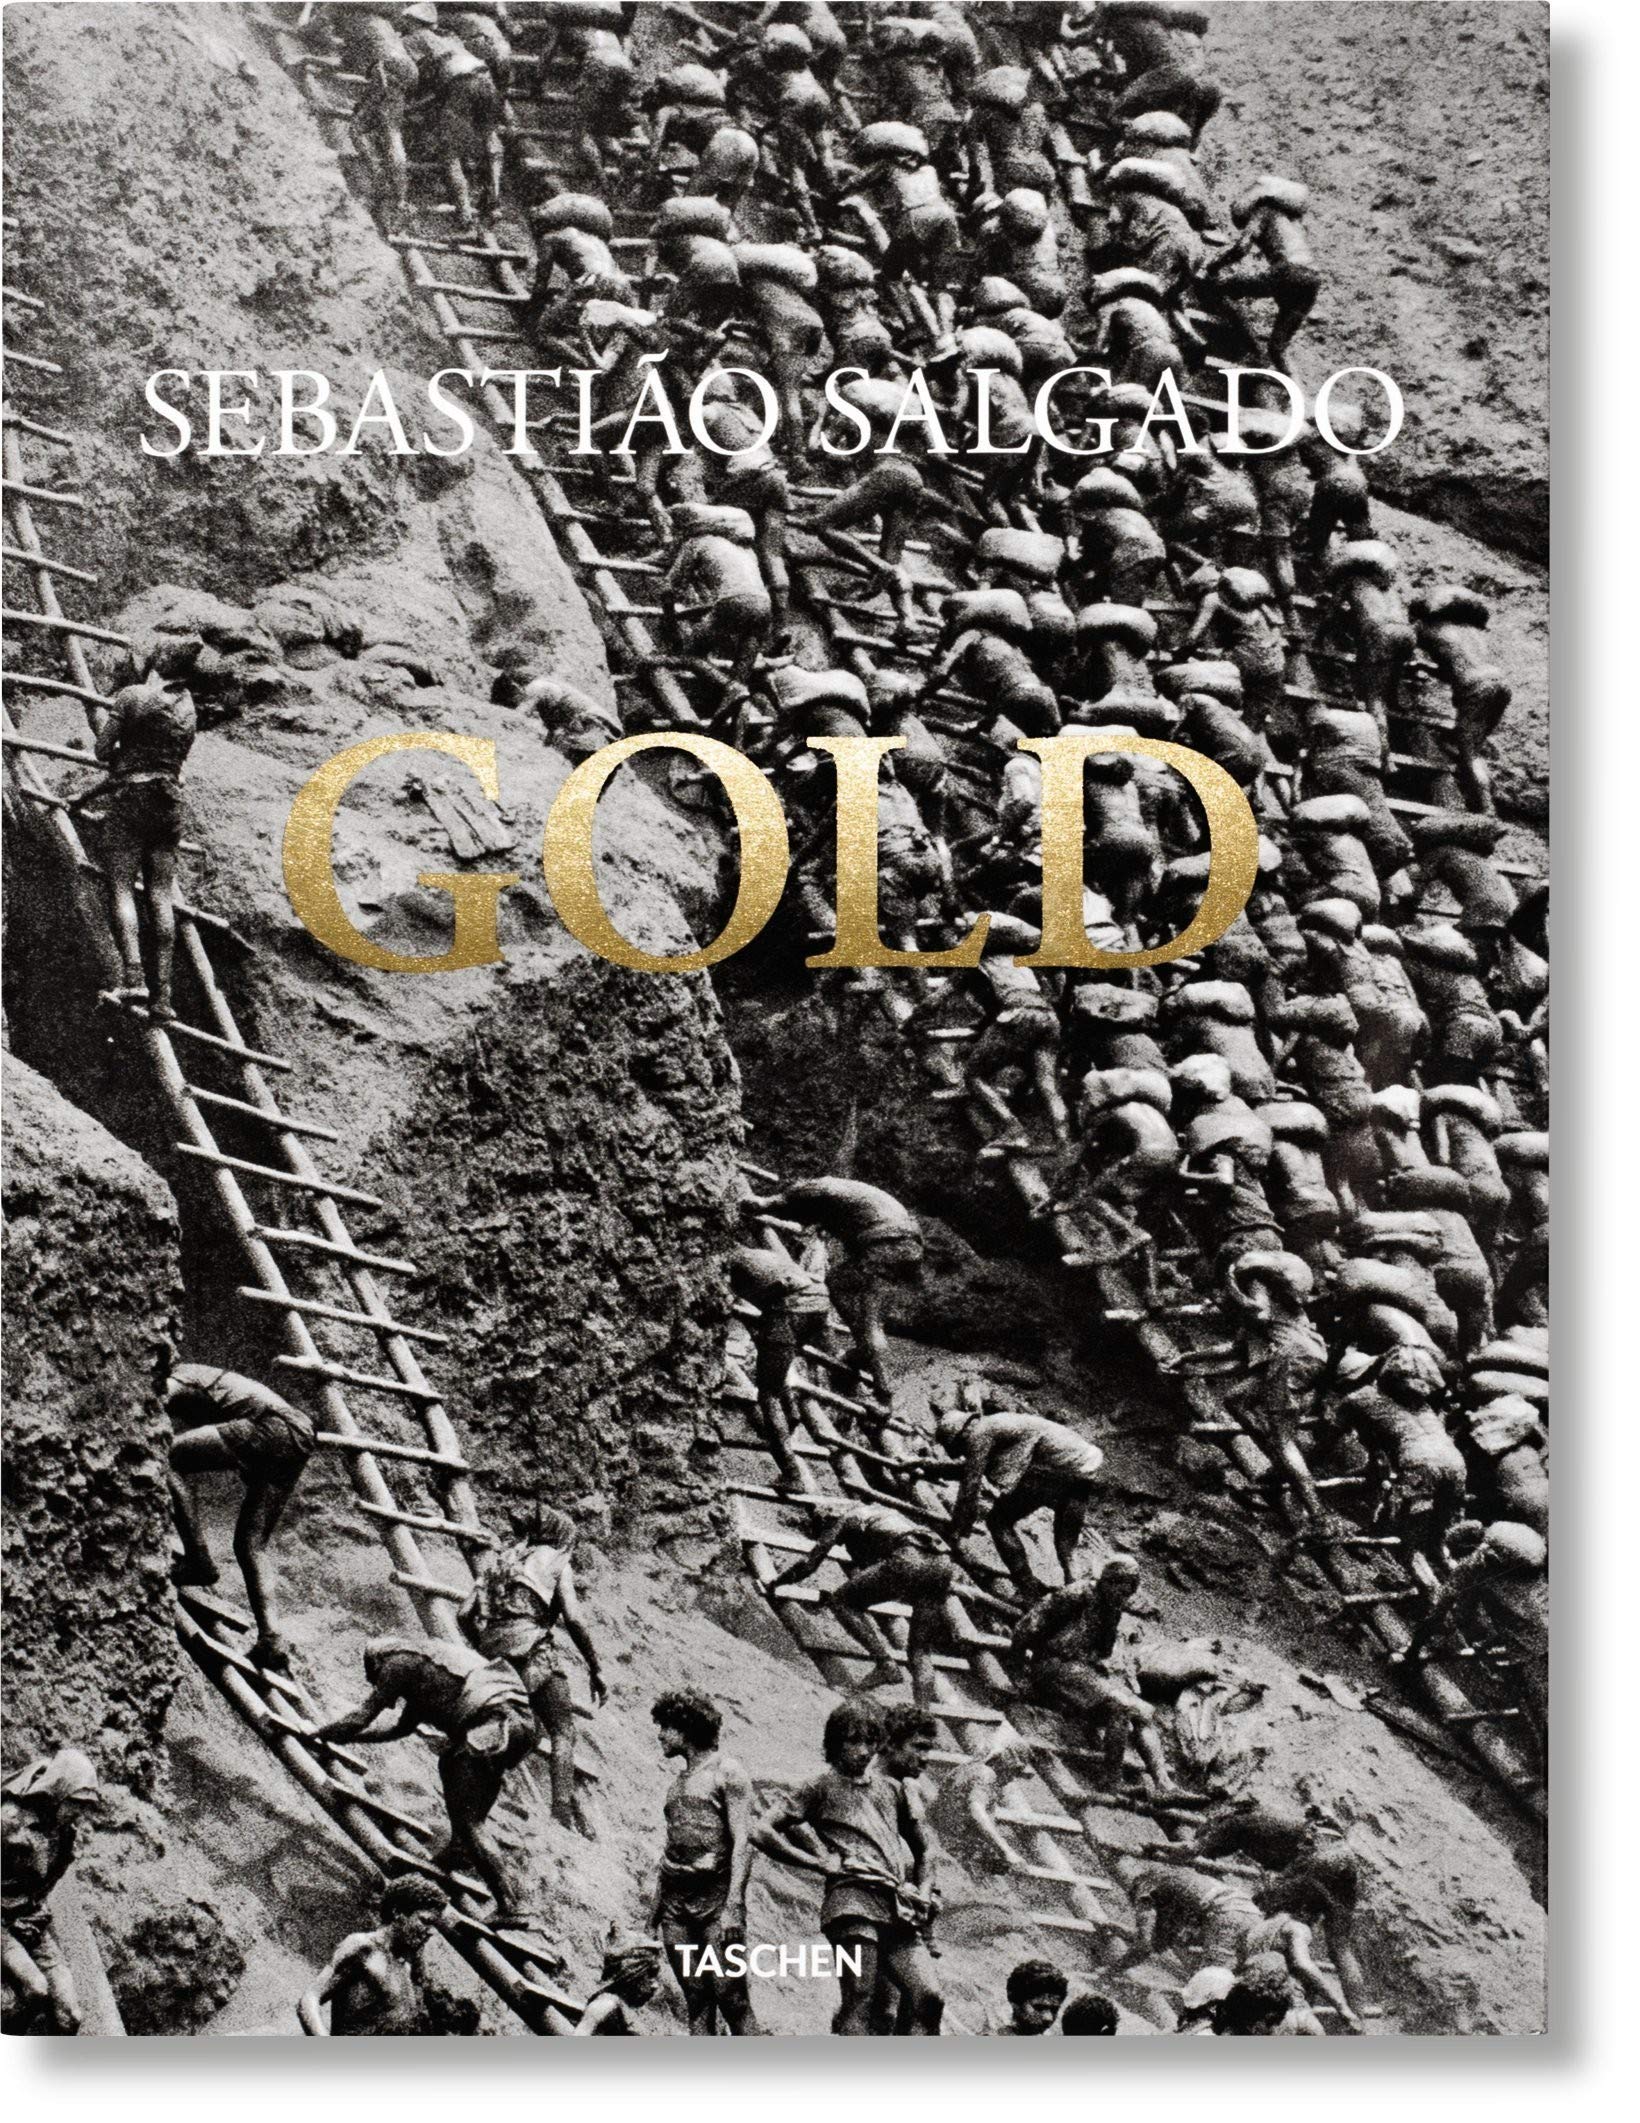 Gold | Sebastiao Salgado, Alan Riding